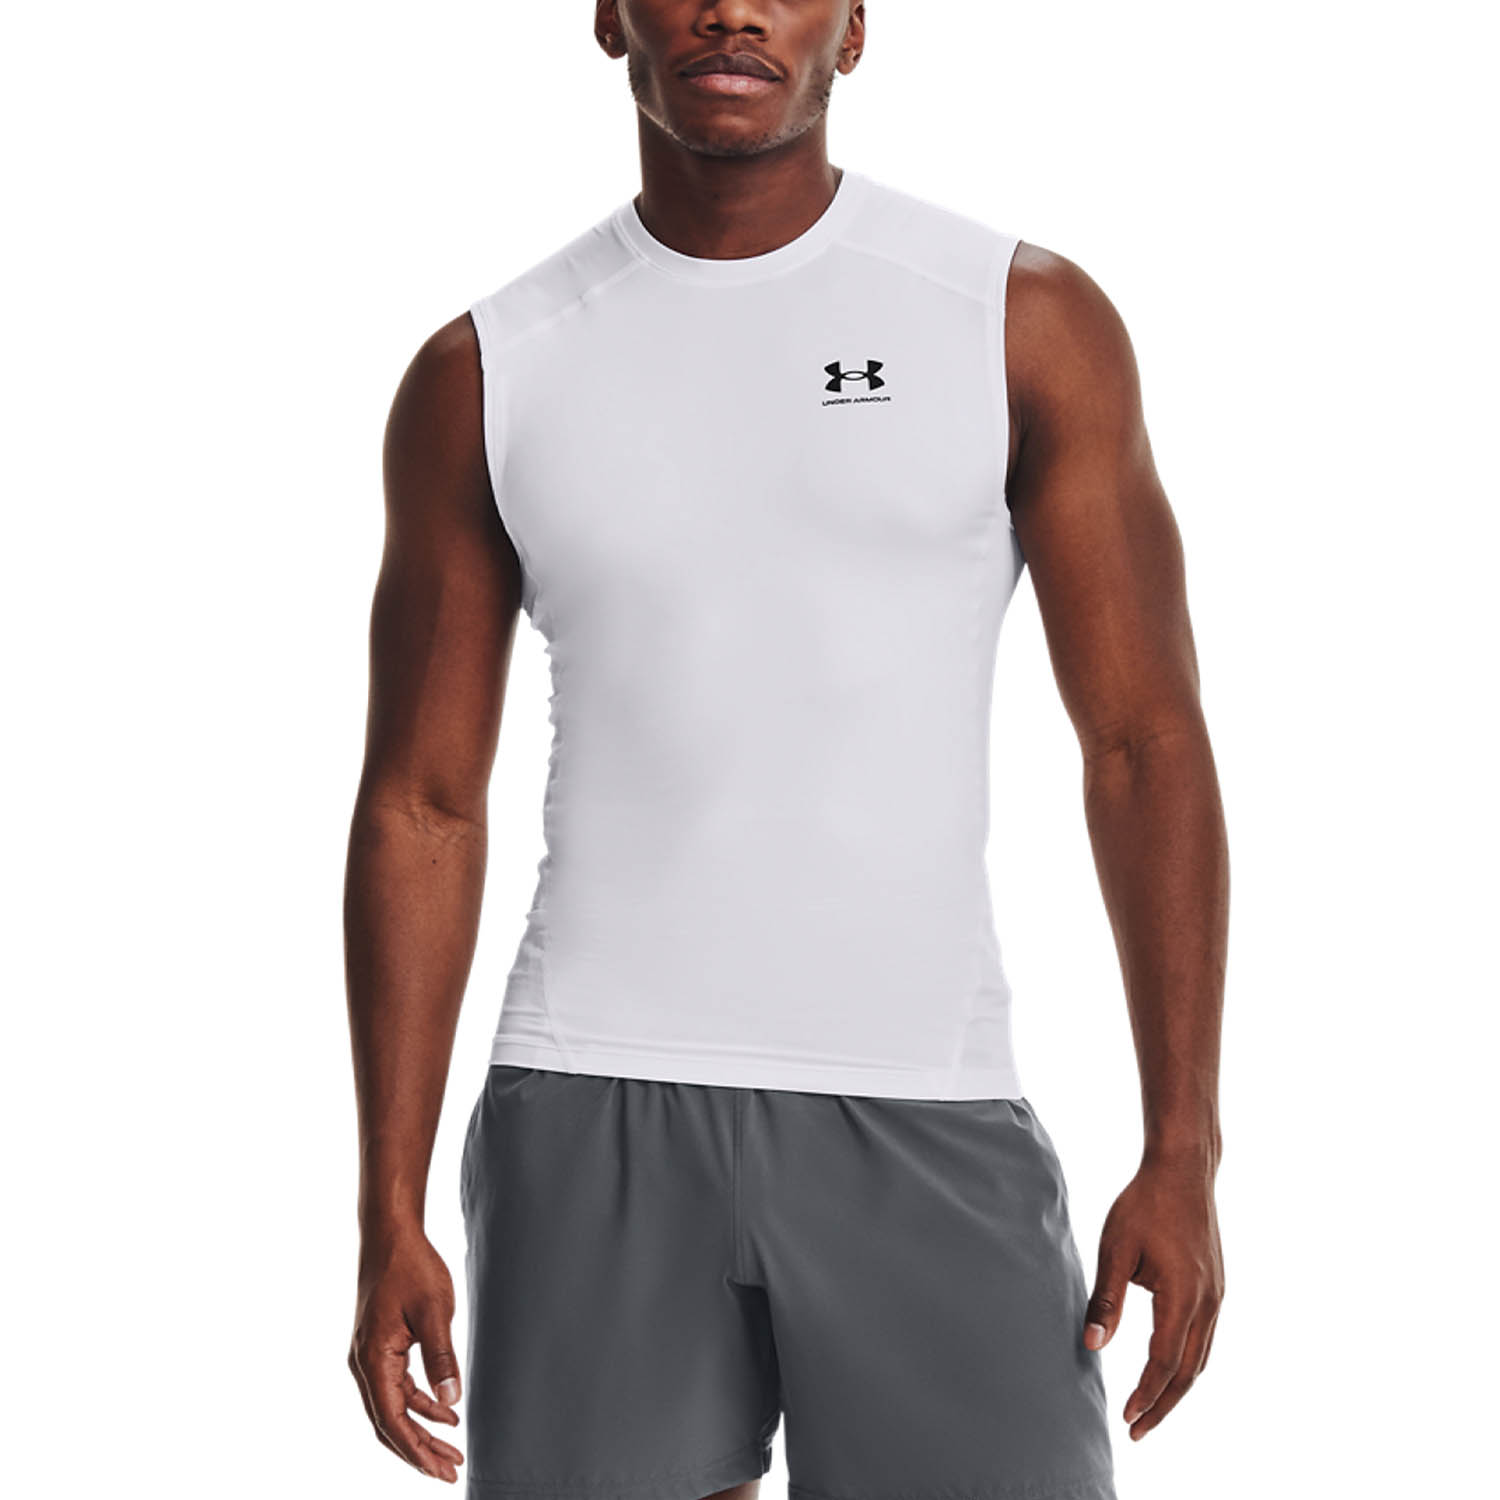 Under Armour Men's UA HeatGear Sonic Sleeveless Compression Shirt Workout  Tank